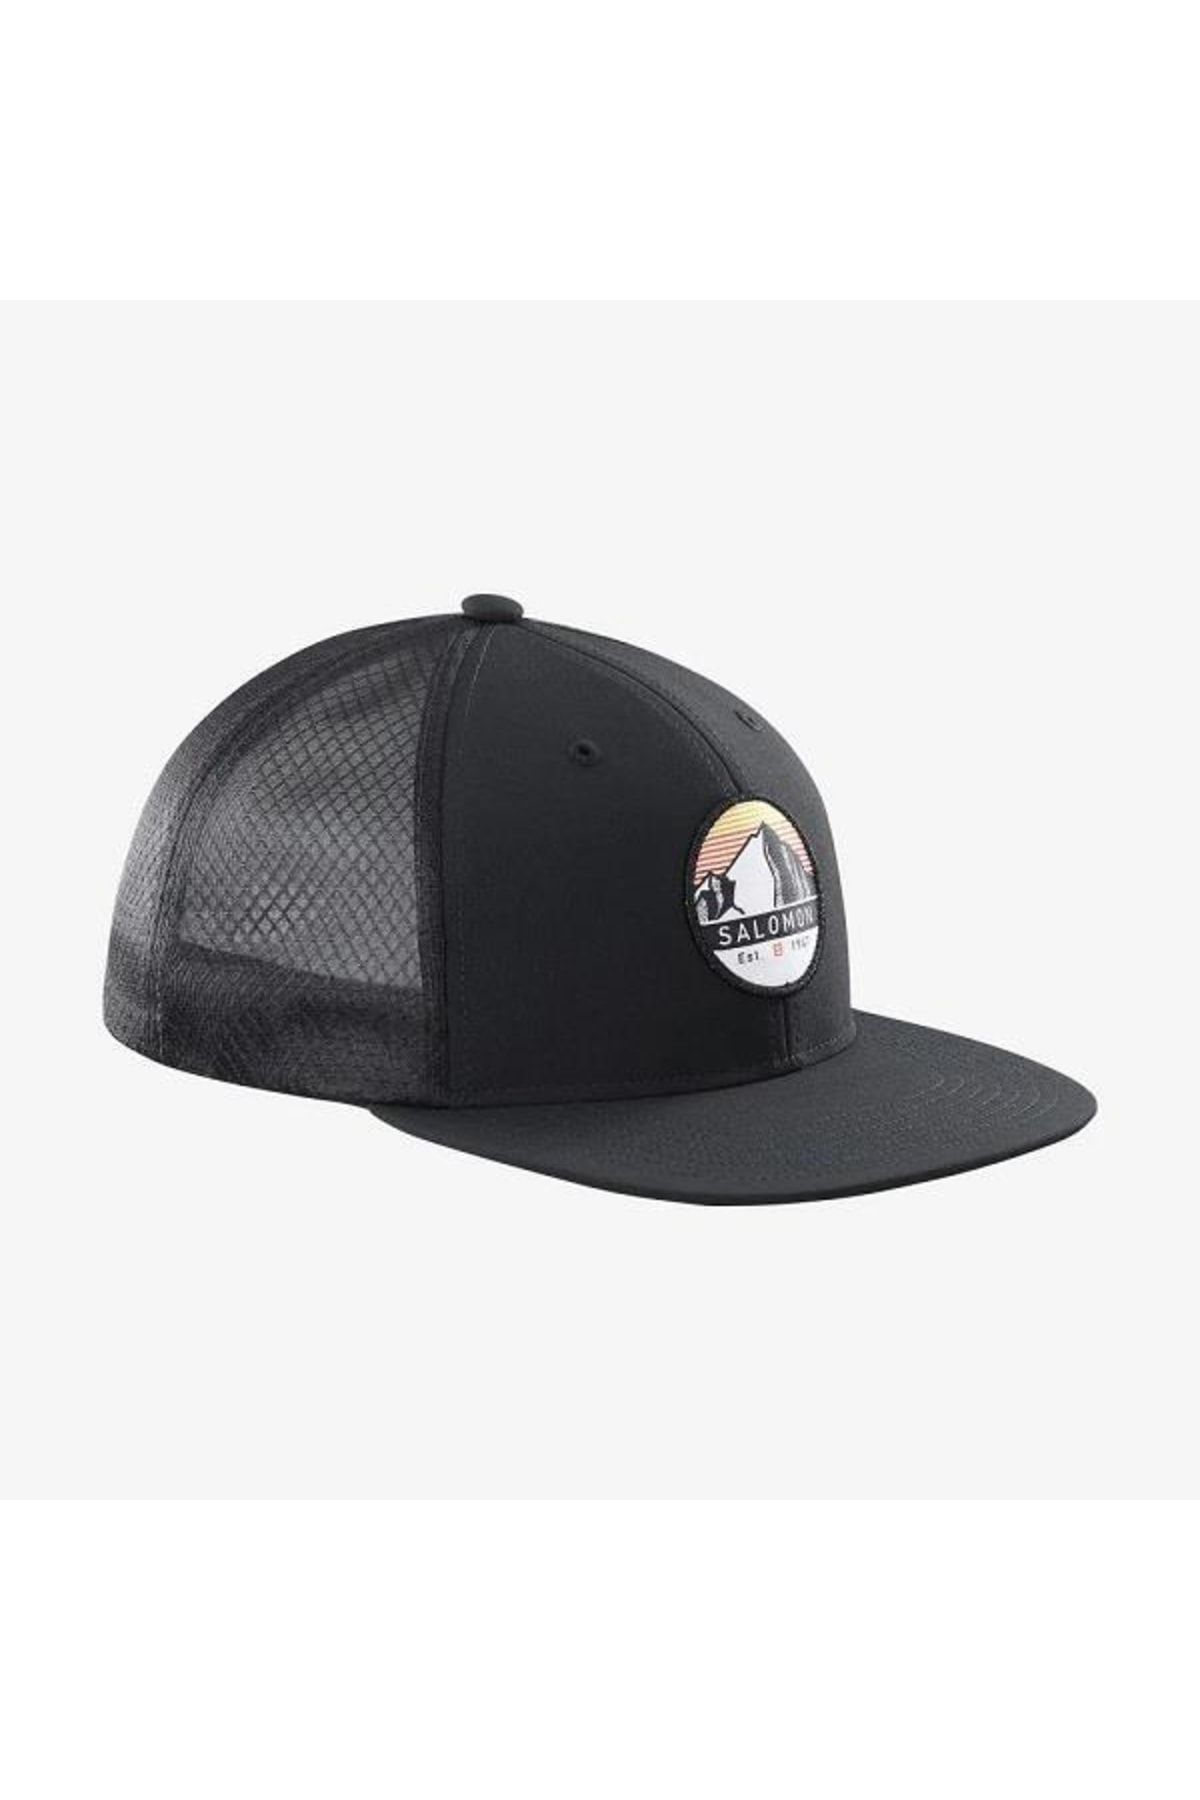 Salomon Cap Flat Unisex Black Hat LC1680300-22873